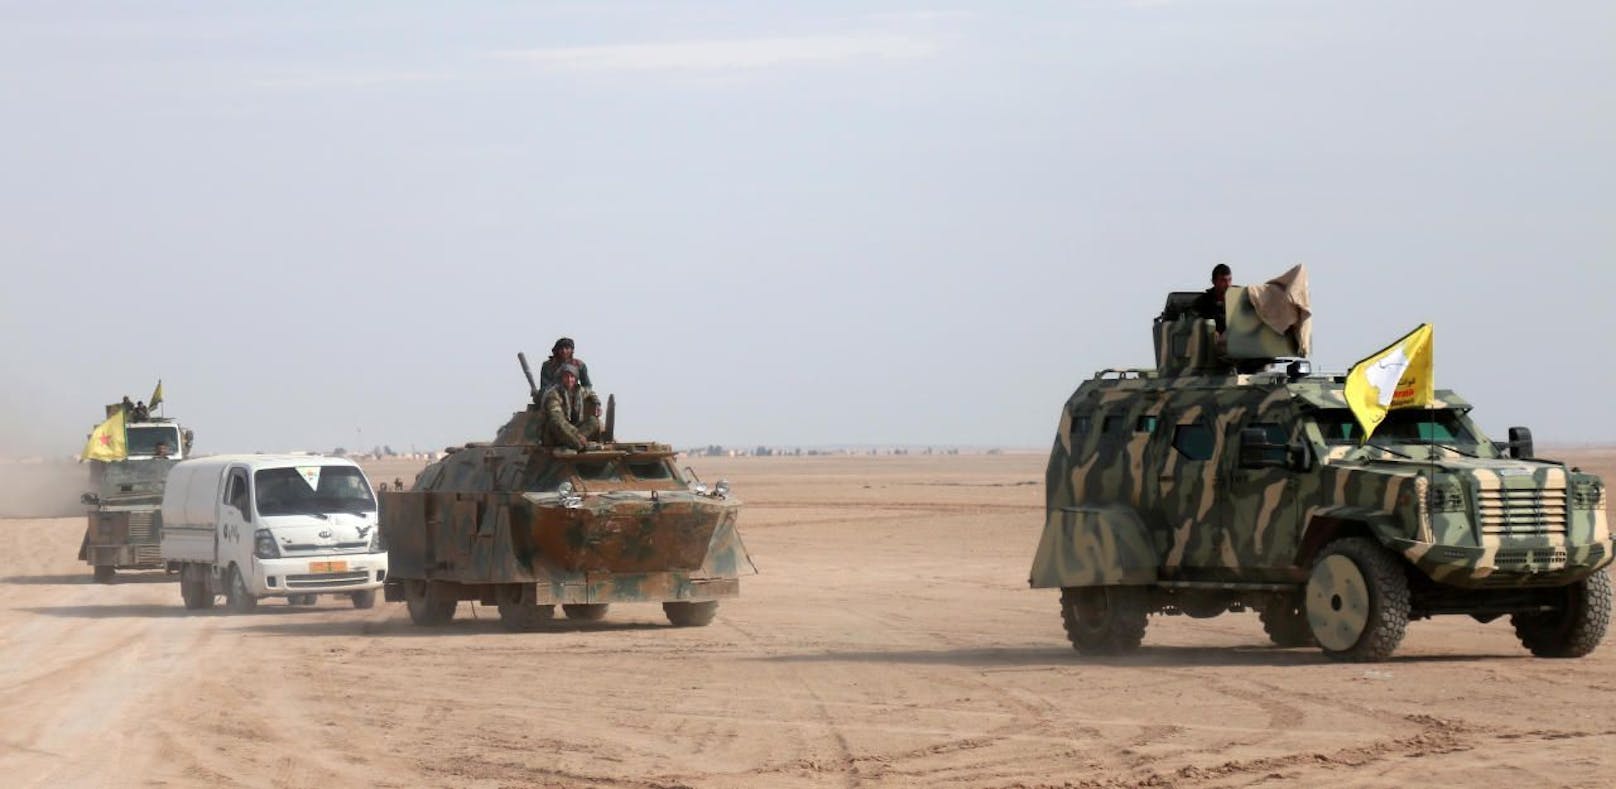 Syrian Democratic Forces (SDF) auf dem Weg nach Raqqa